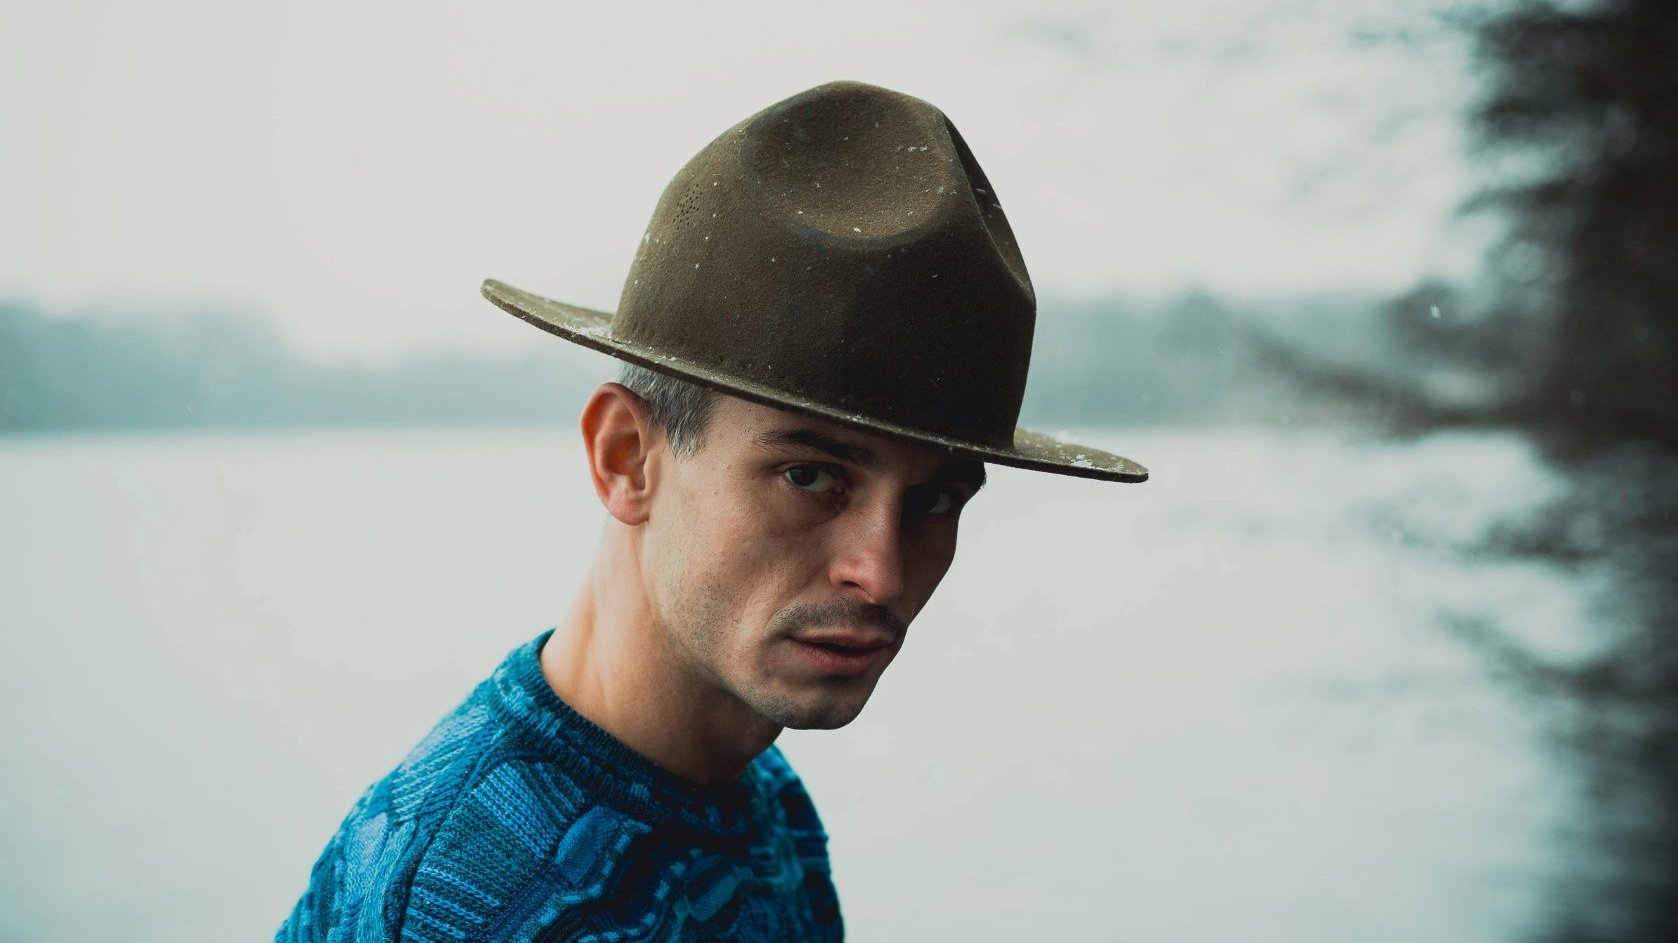 Mężczyzna w kapeluszu patrzy w obiektyw. W tle jezioro, pogoda pochmurna.